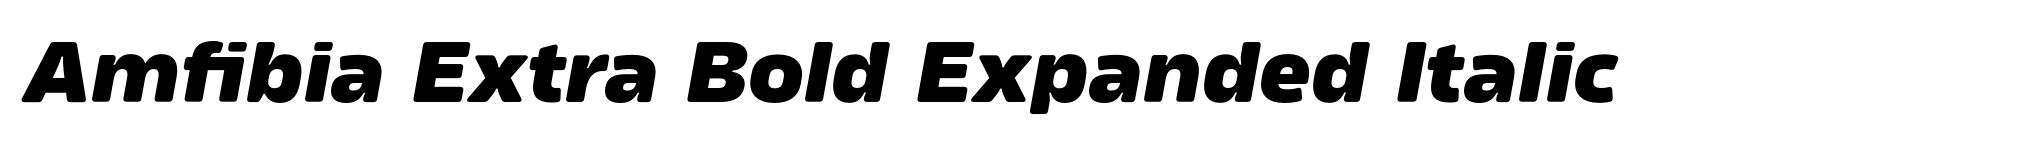 Amfibia Extra Bold Expanded Italic image